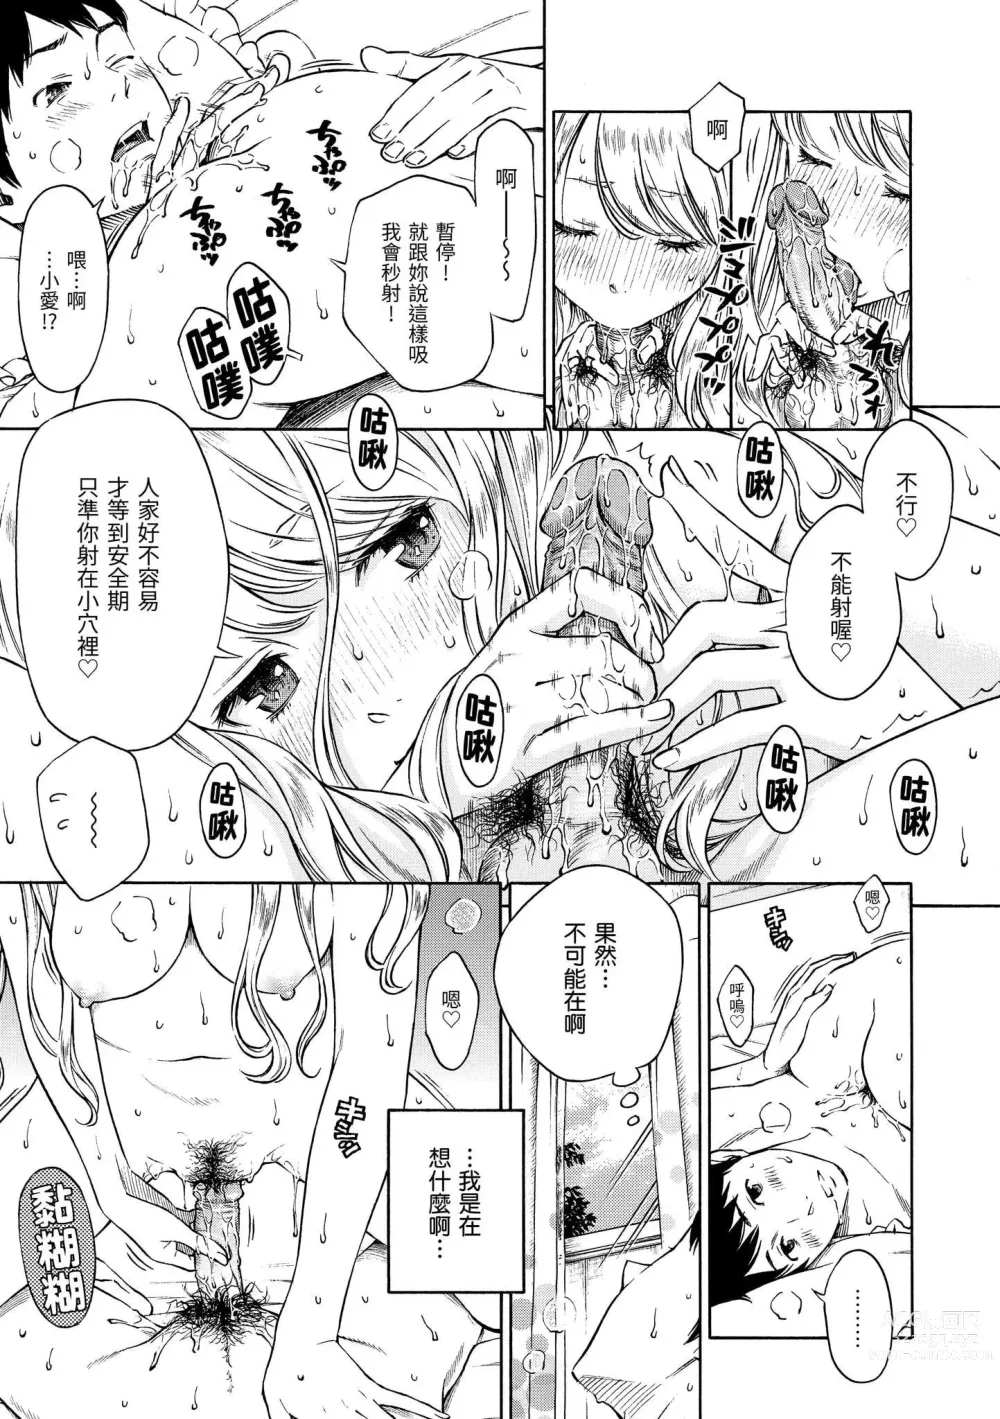 Page 30 of manga 放學後的香草女孩 (decensored)